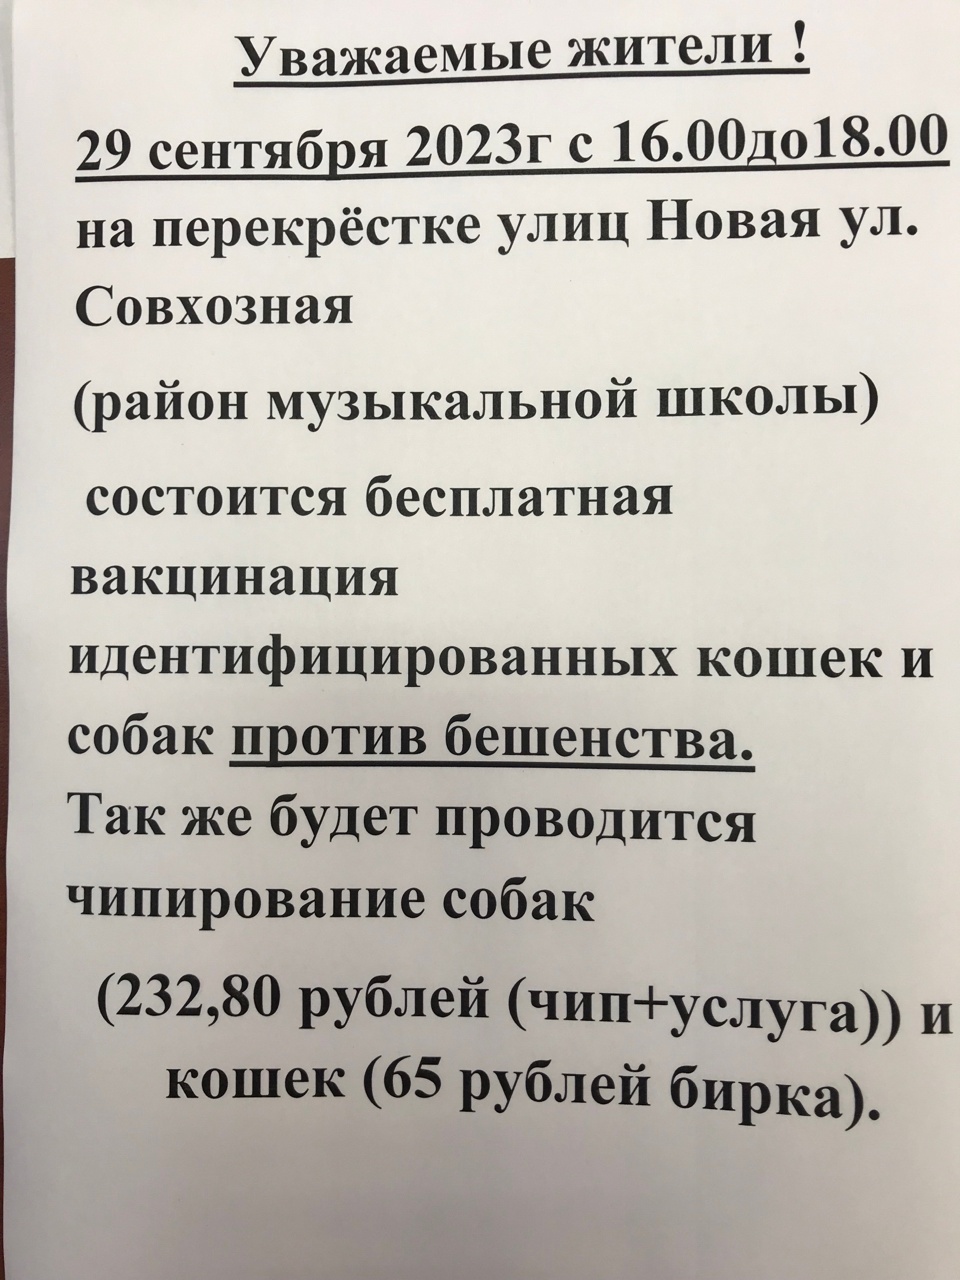 Бесплатная вакцинация кошек в москве 2024